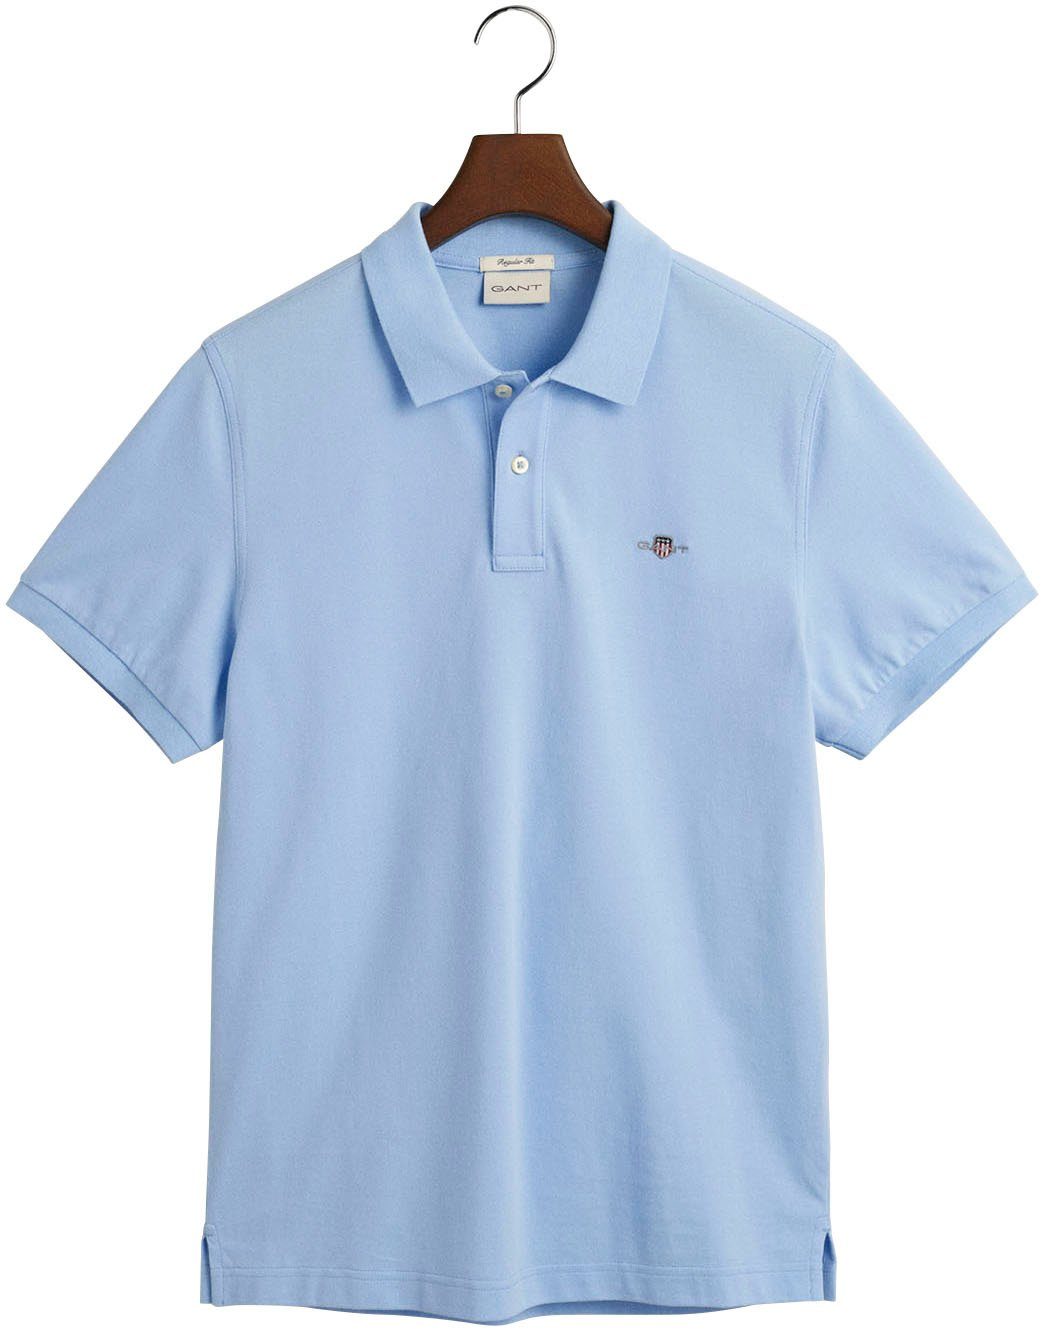 Gant Poloshirt der REG blue mit PIQUE SHIELD Brust capri POLO Logostickerei auf SS